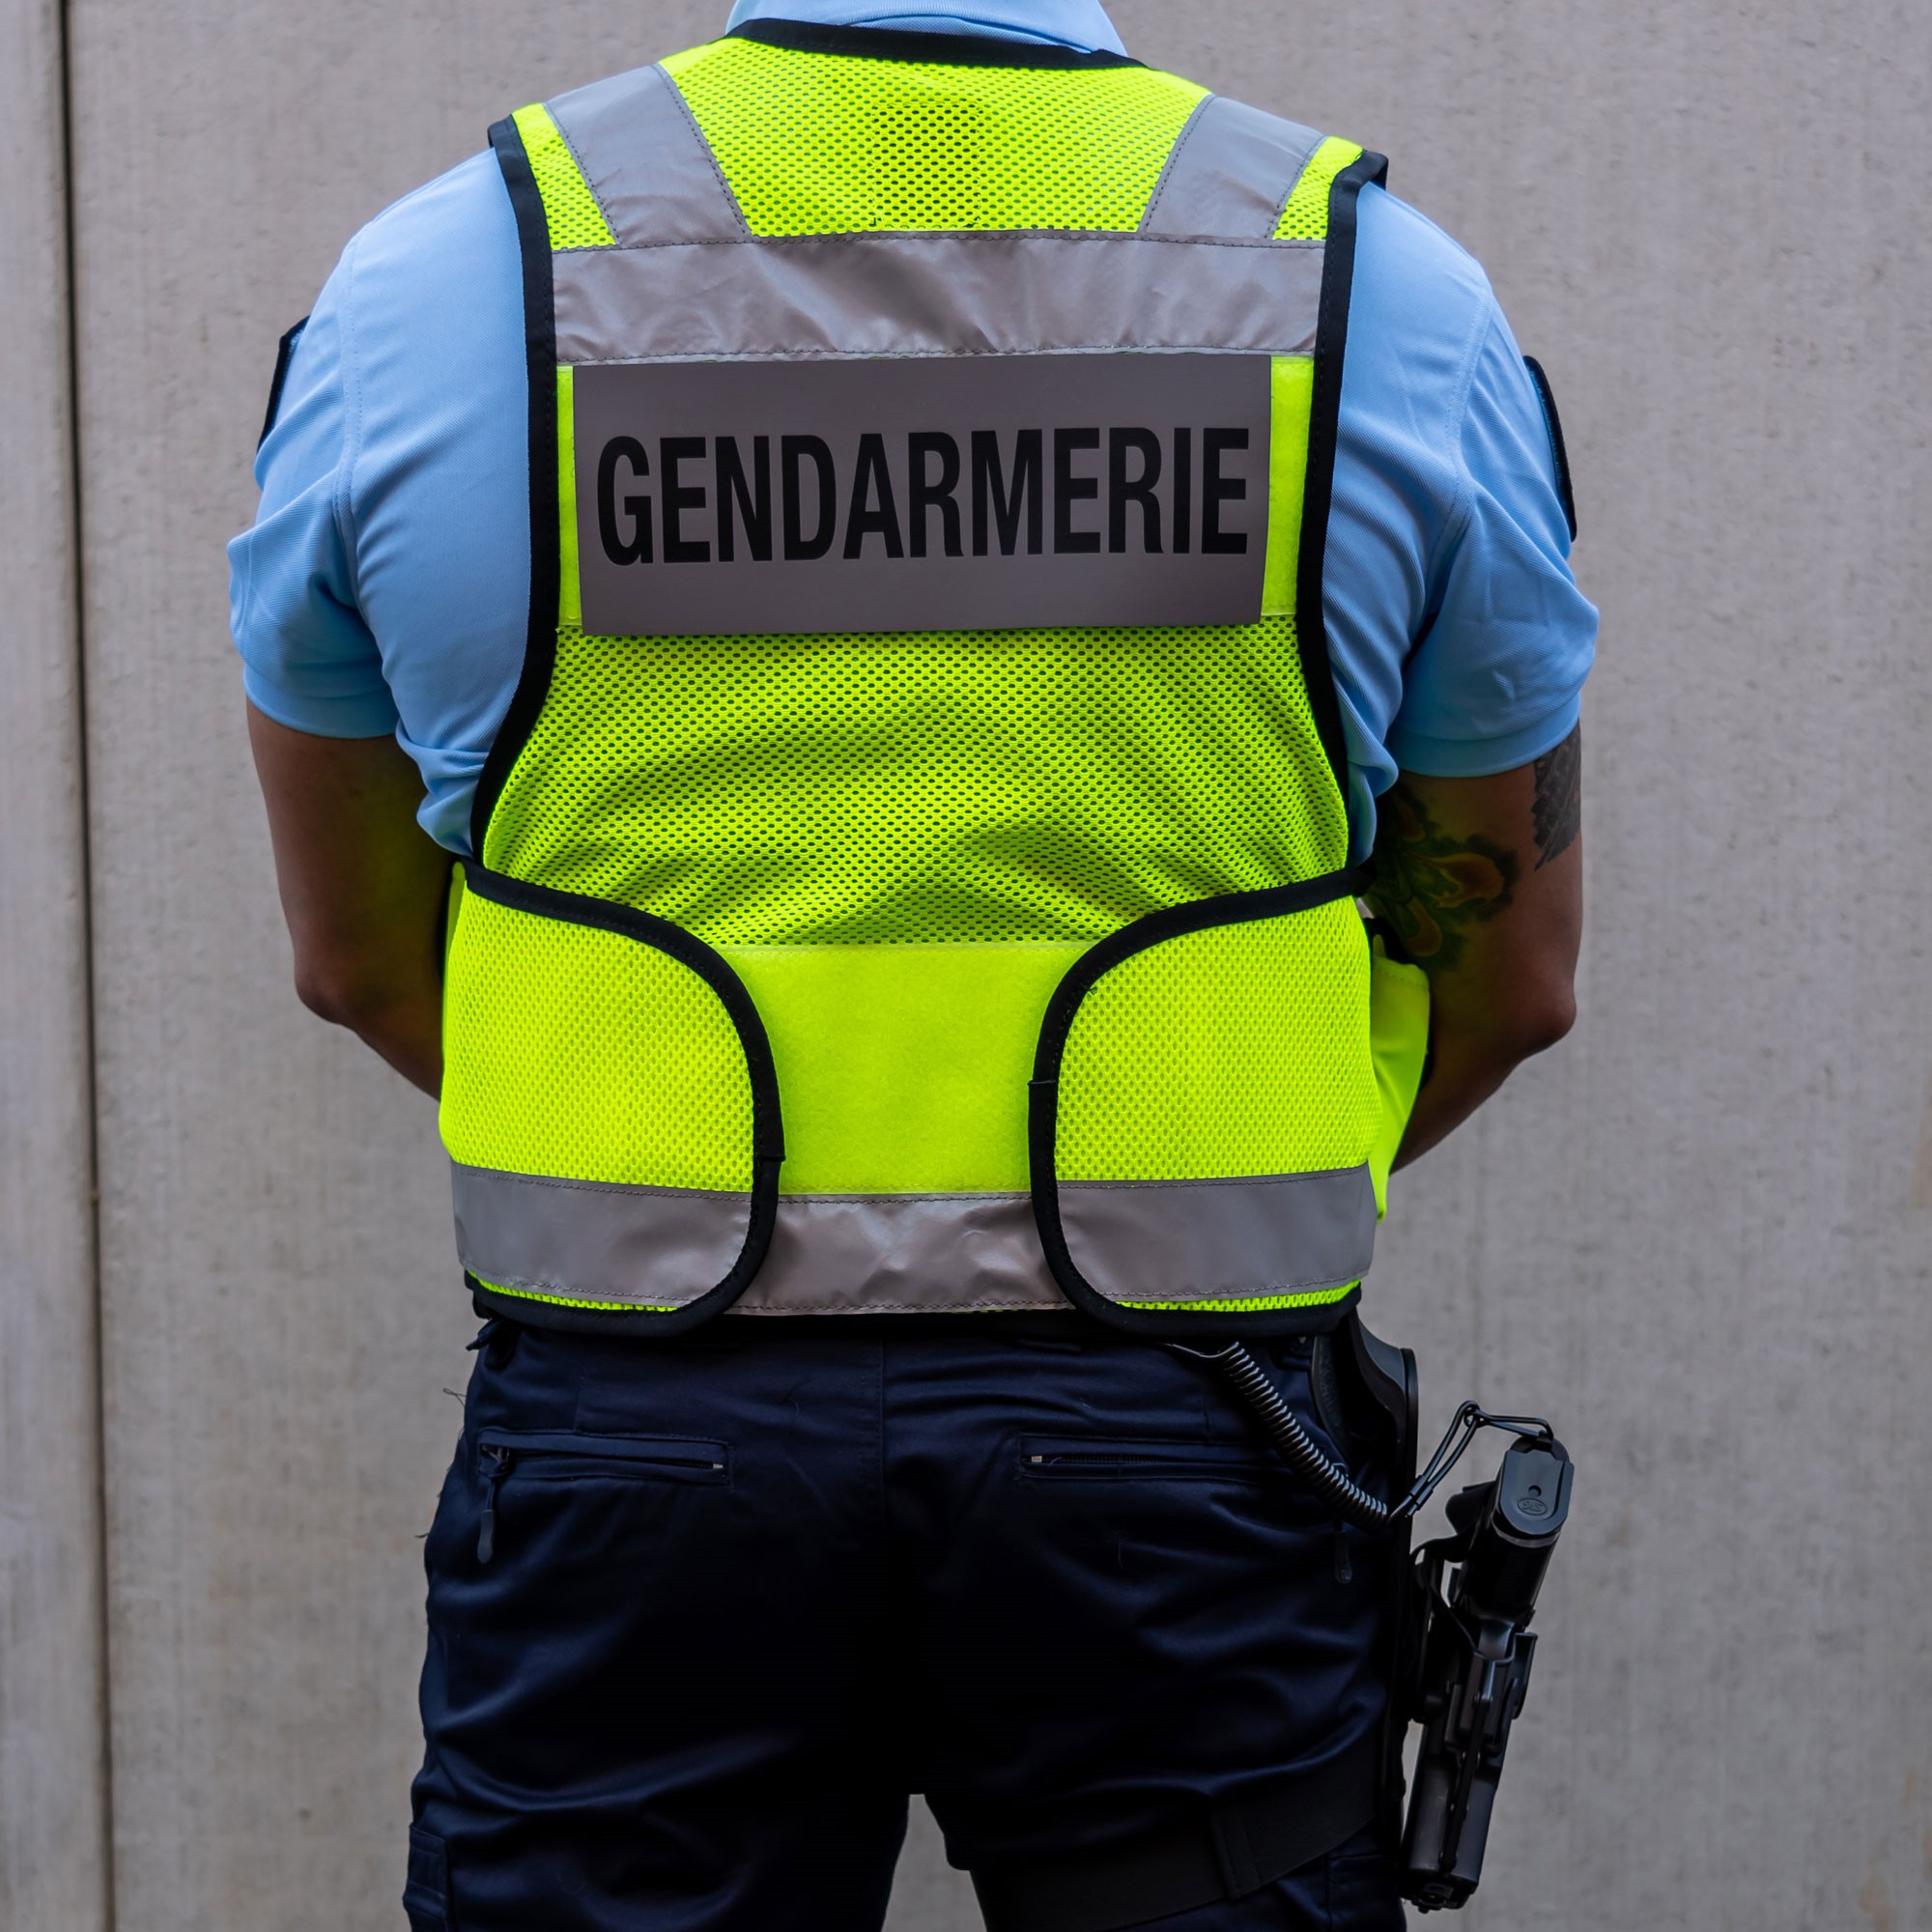 gilet reflechissant gendarmerie